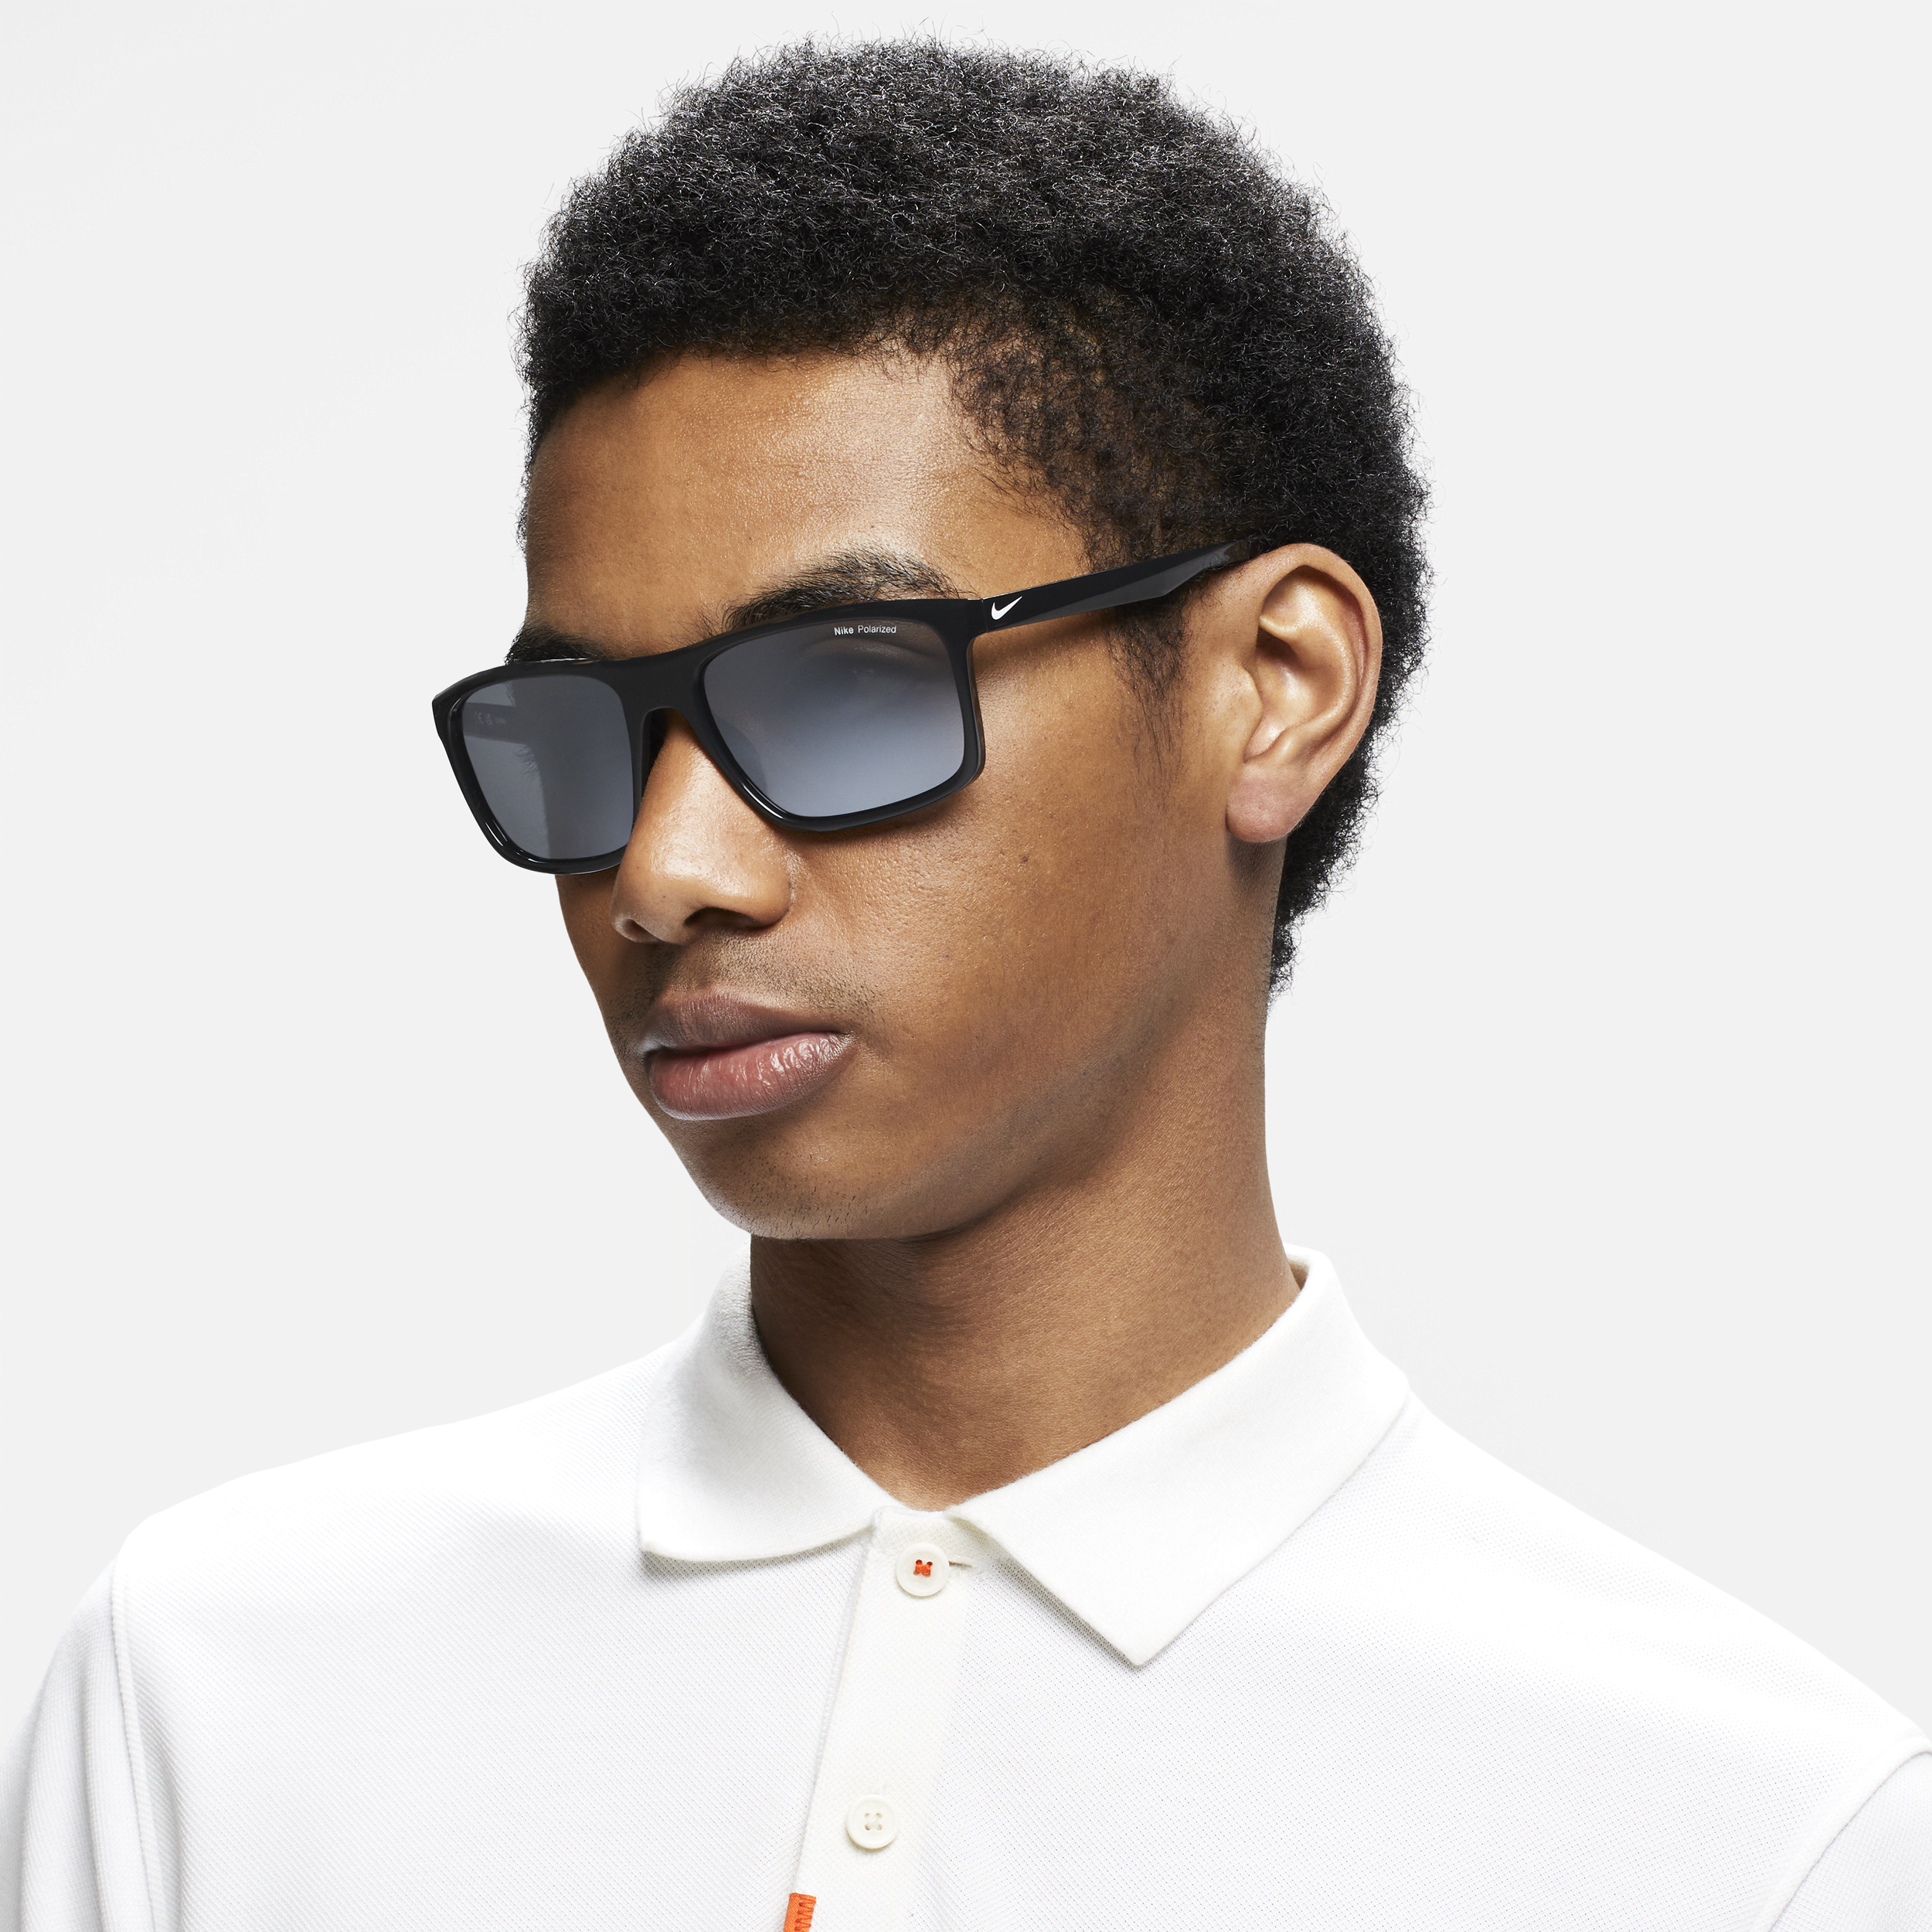 Nike Unisex Fire Large Polarized Sunglasses In Black